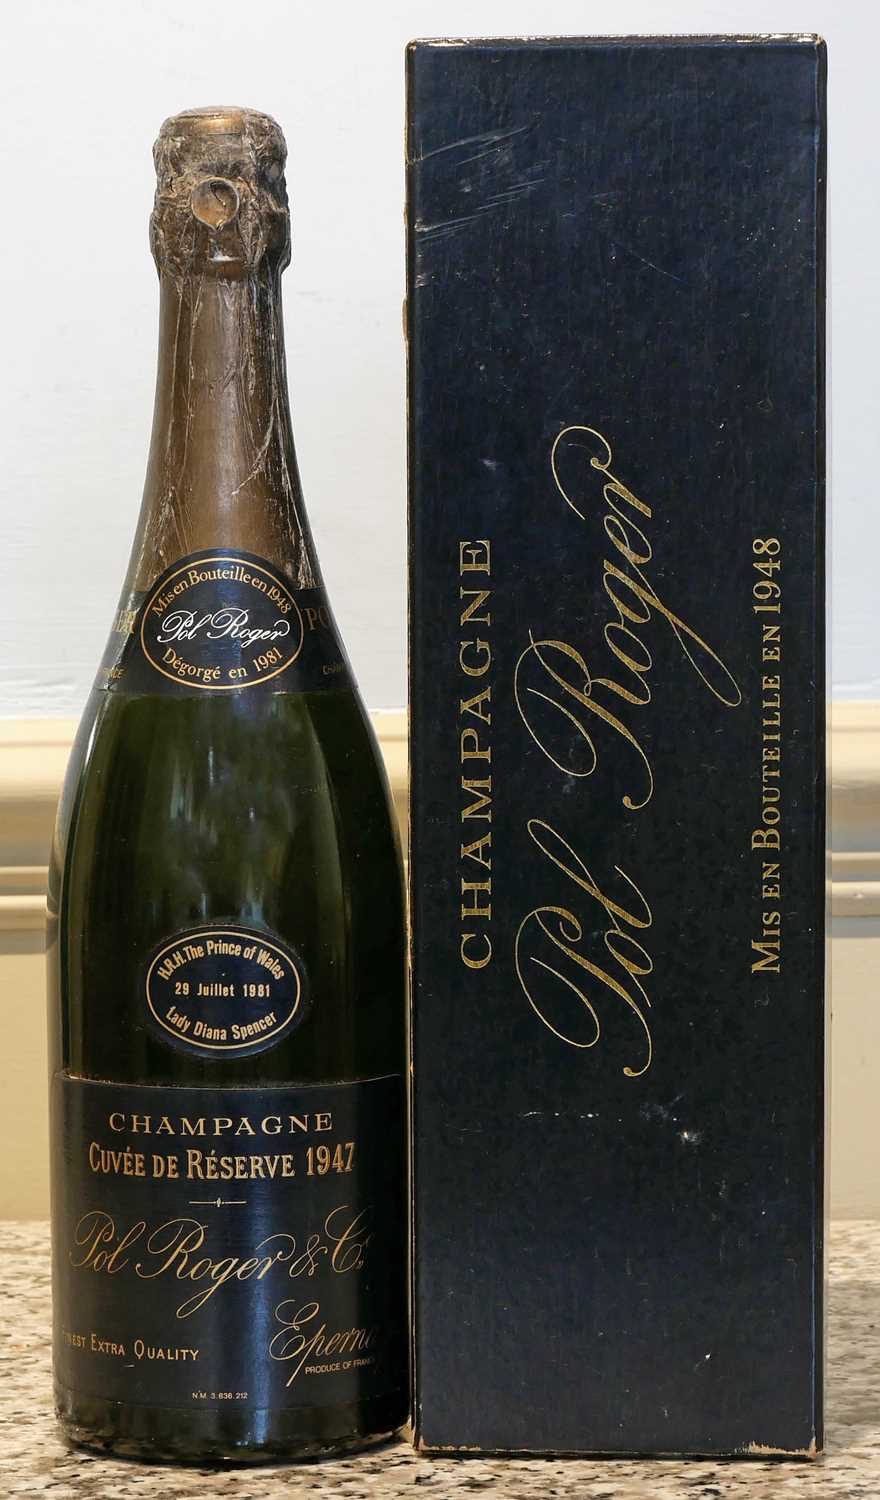 1 bottle Champagne Pol Roger Vintage